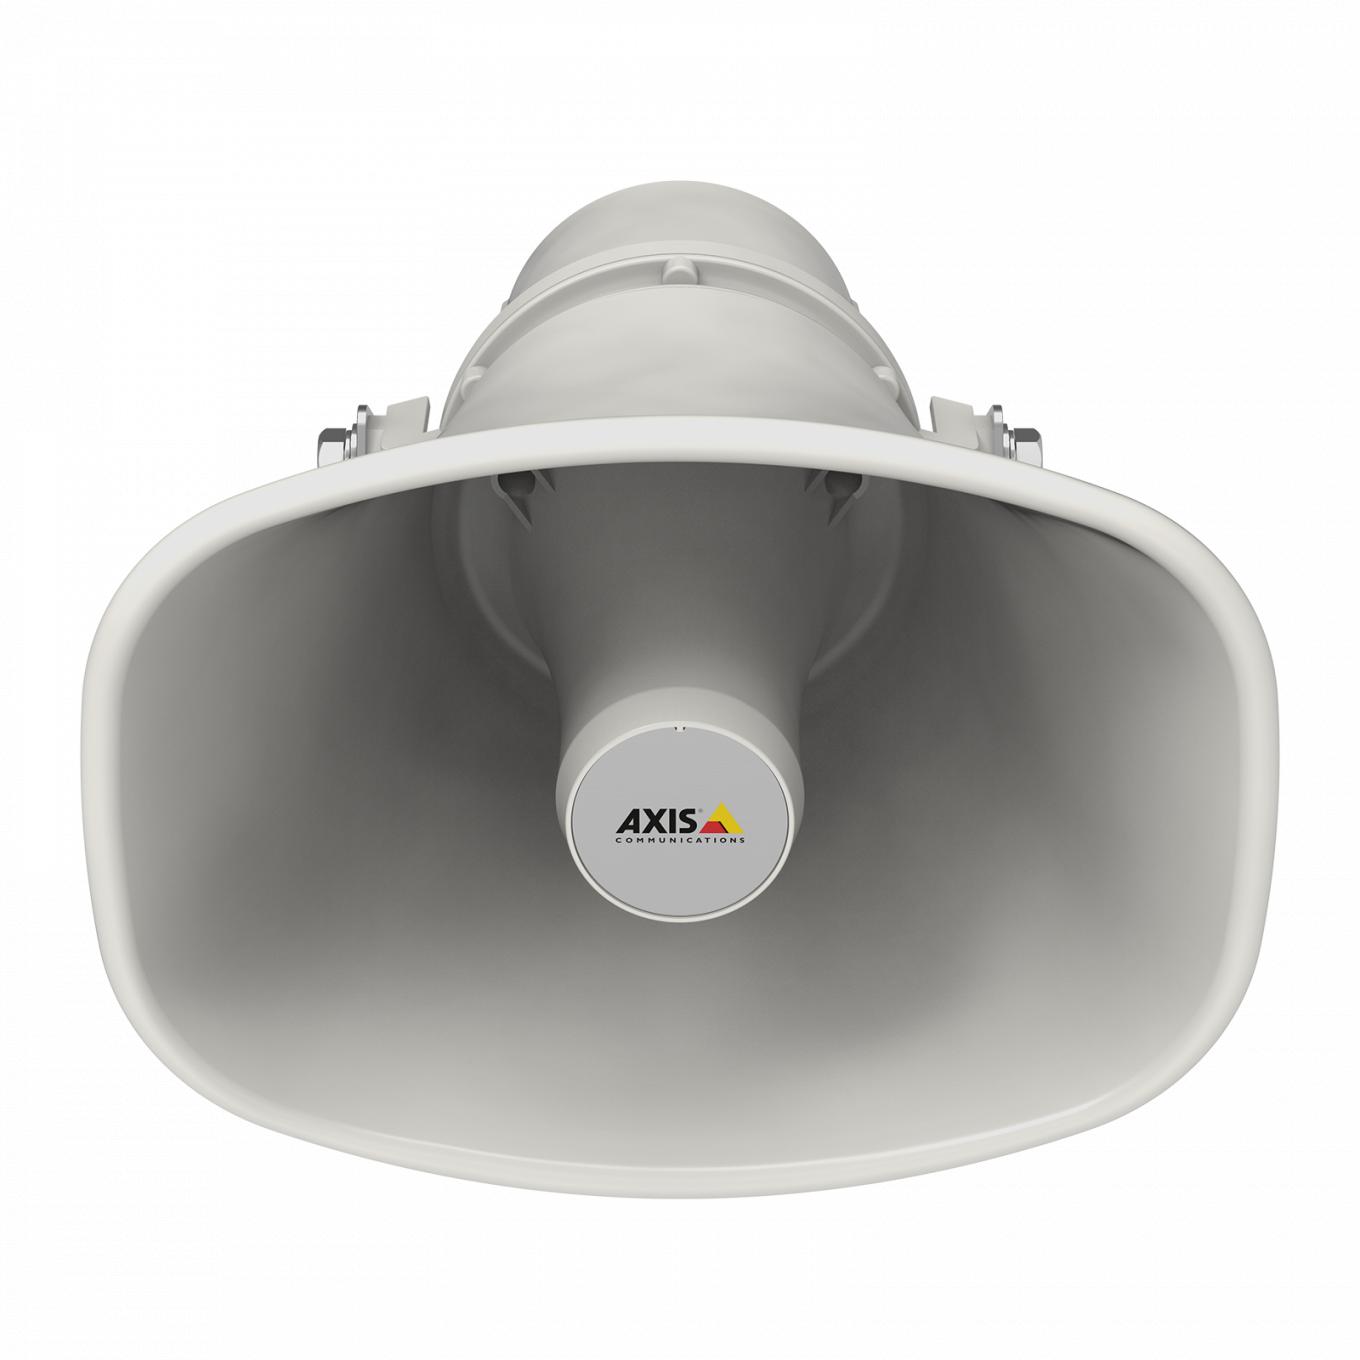 AXIS C1310-E Network Speaker dal davanti, inclinato verso il basso